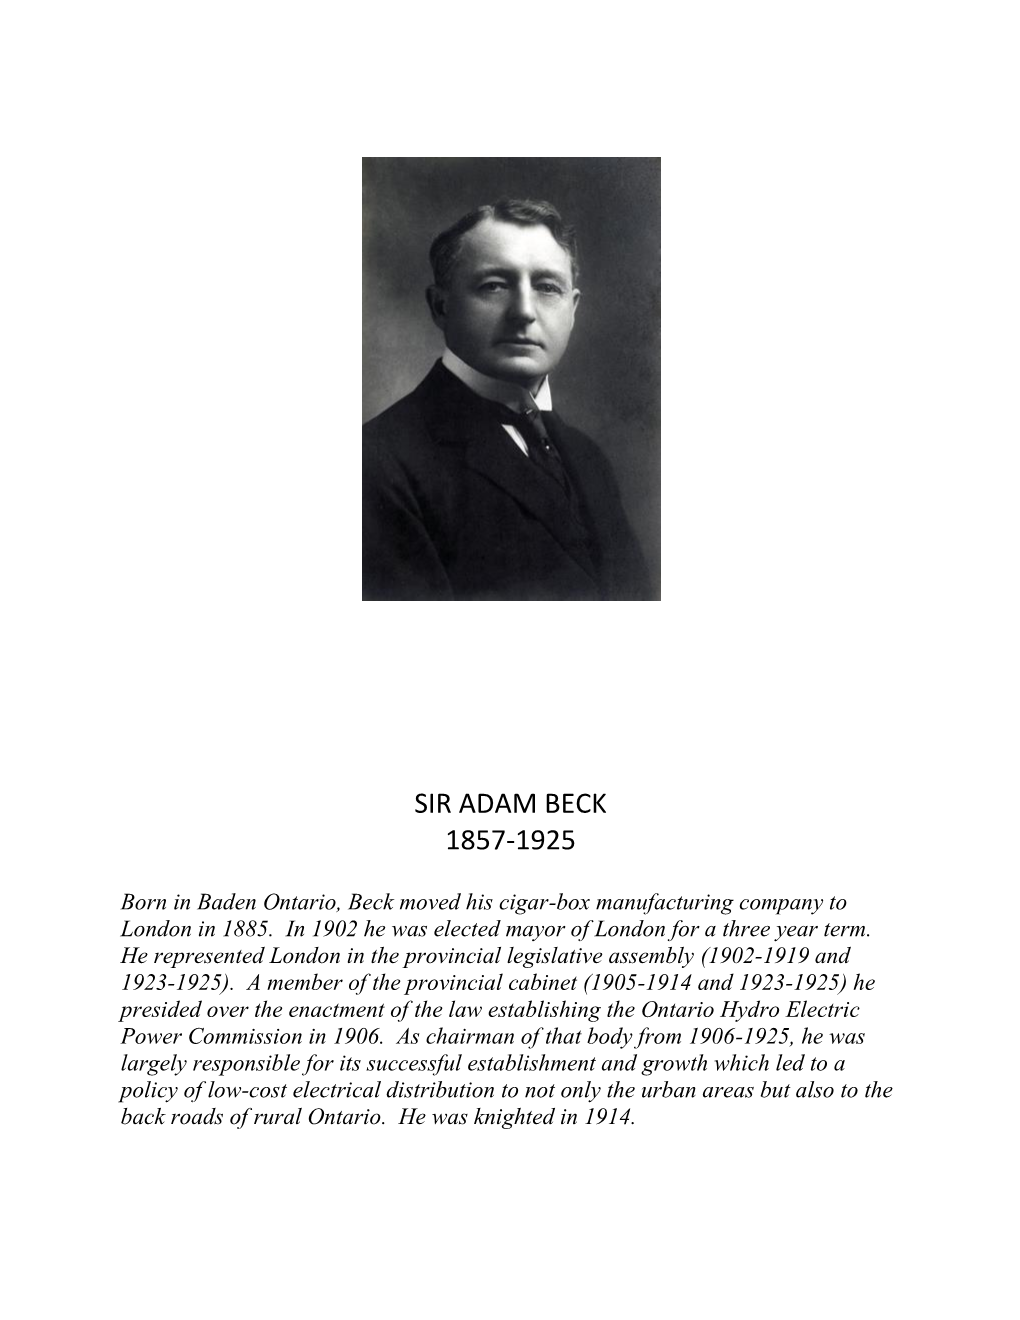 Sir Adam Beck 1857-1925